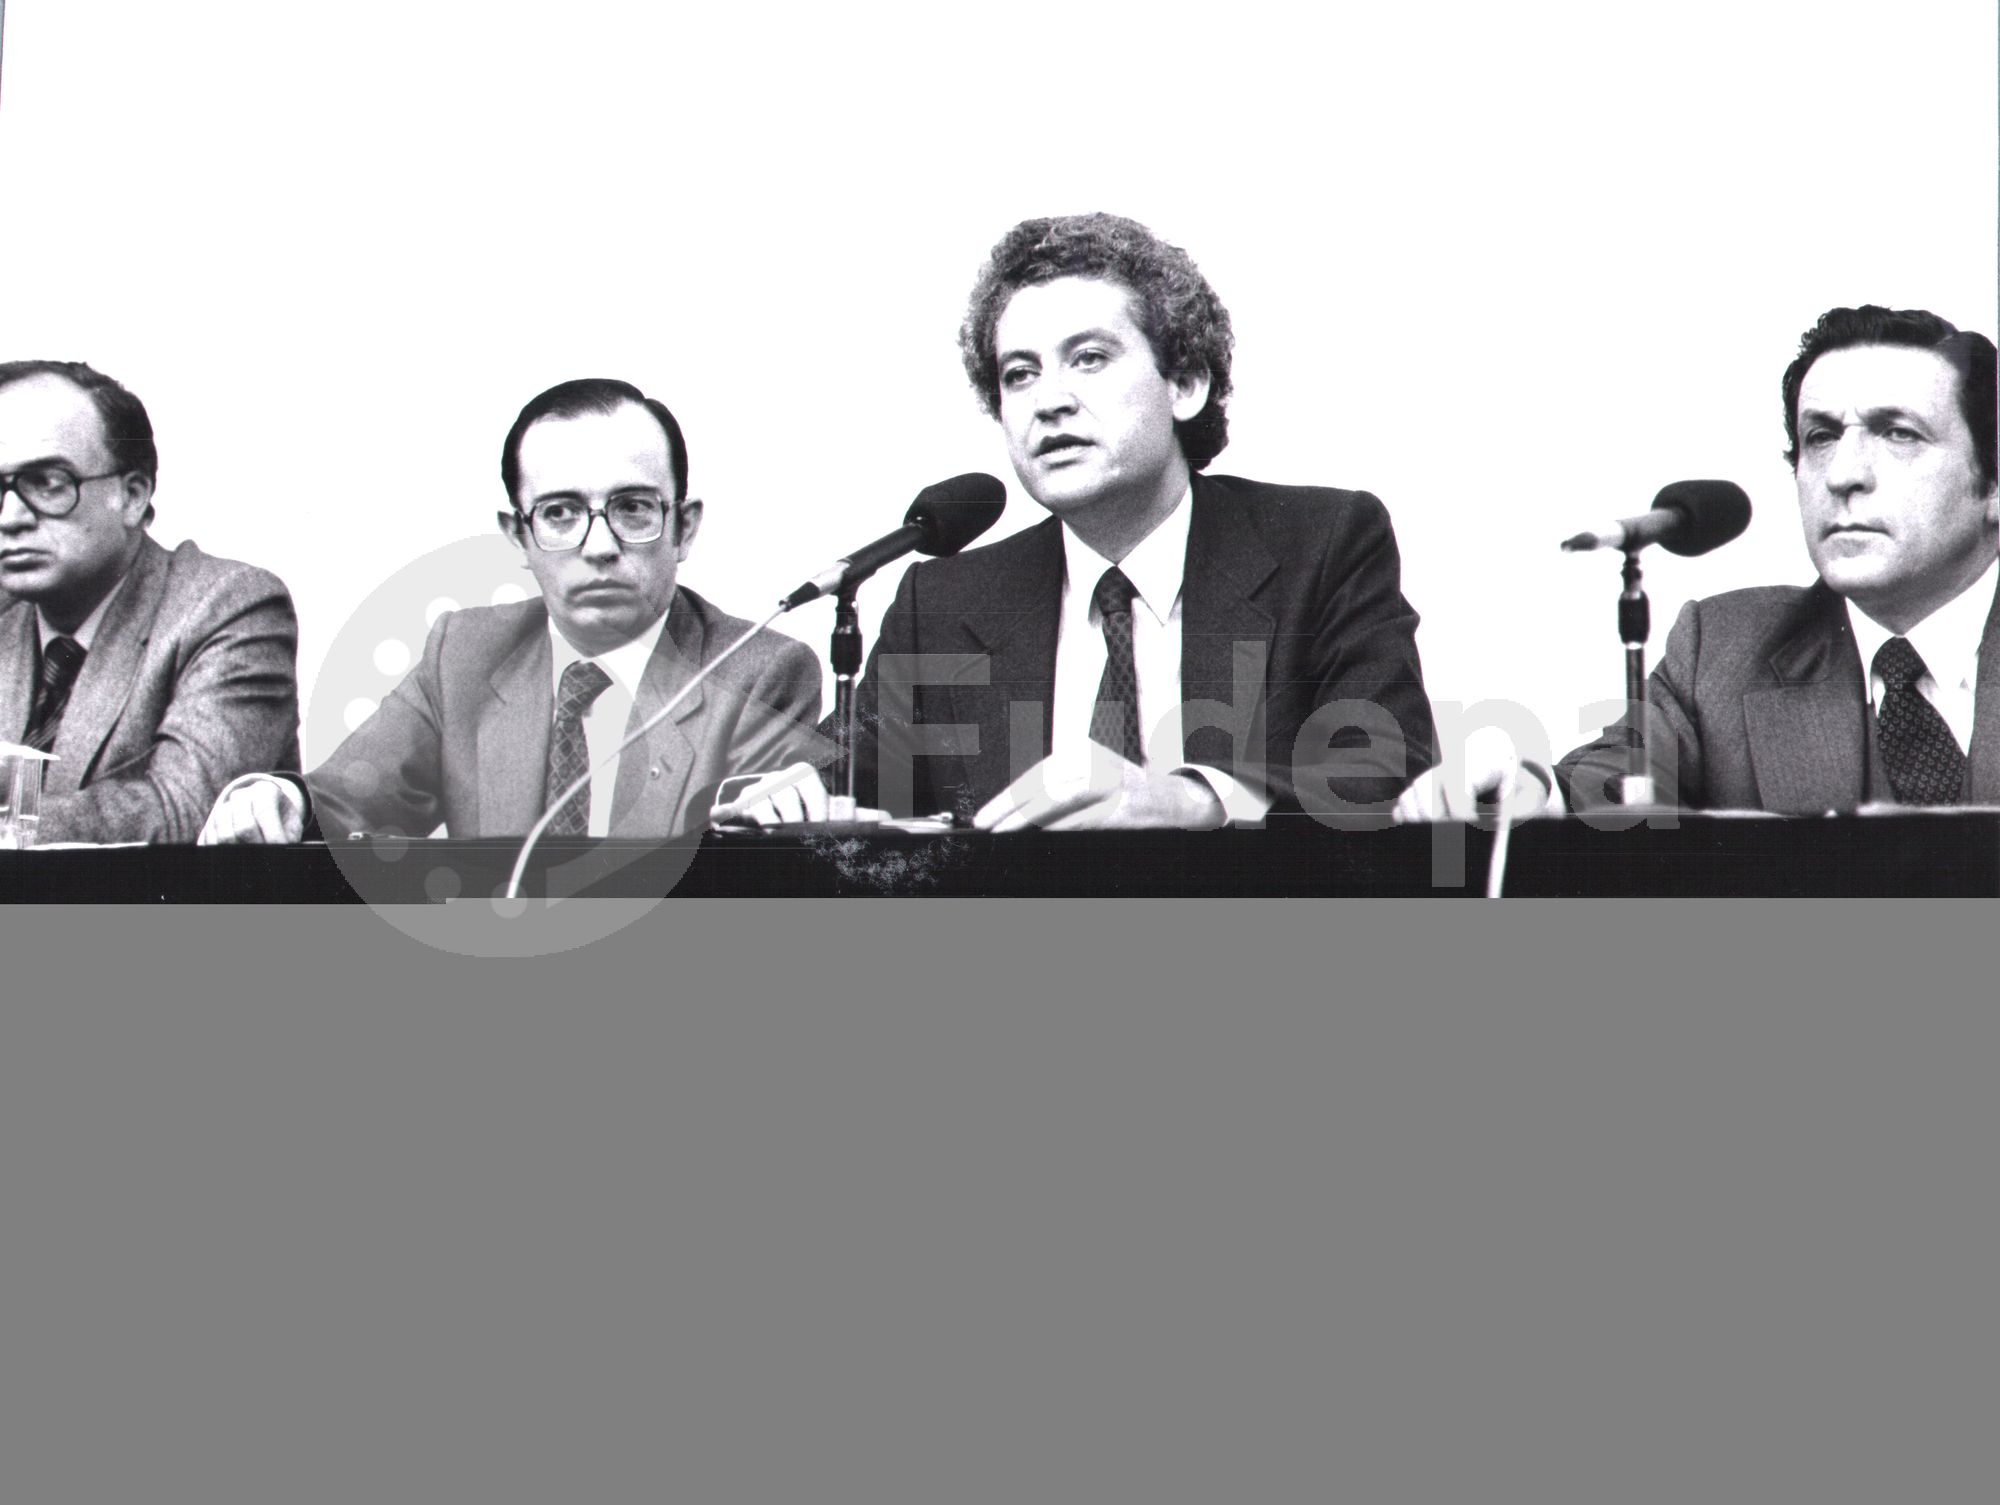 En junio de 1979 se constituye la Junta de Andalucía siendo elegido Rafael Escuredo como Presidente. 
(FUDEPA_AHUGTA: donado por Manuel del Valle Arévalo)